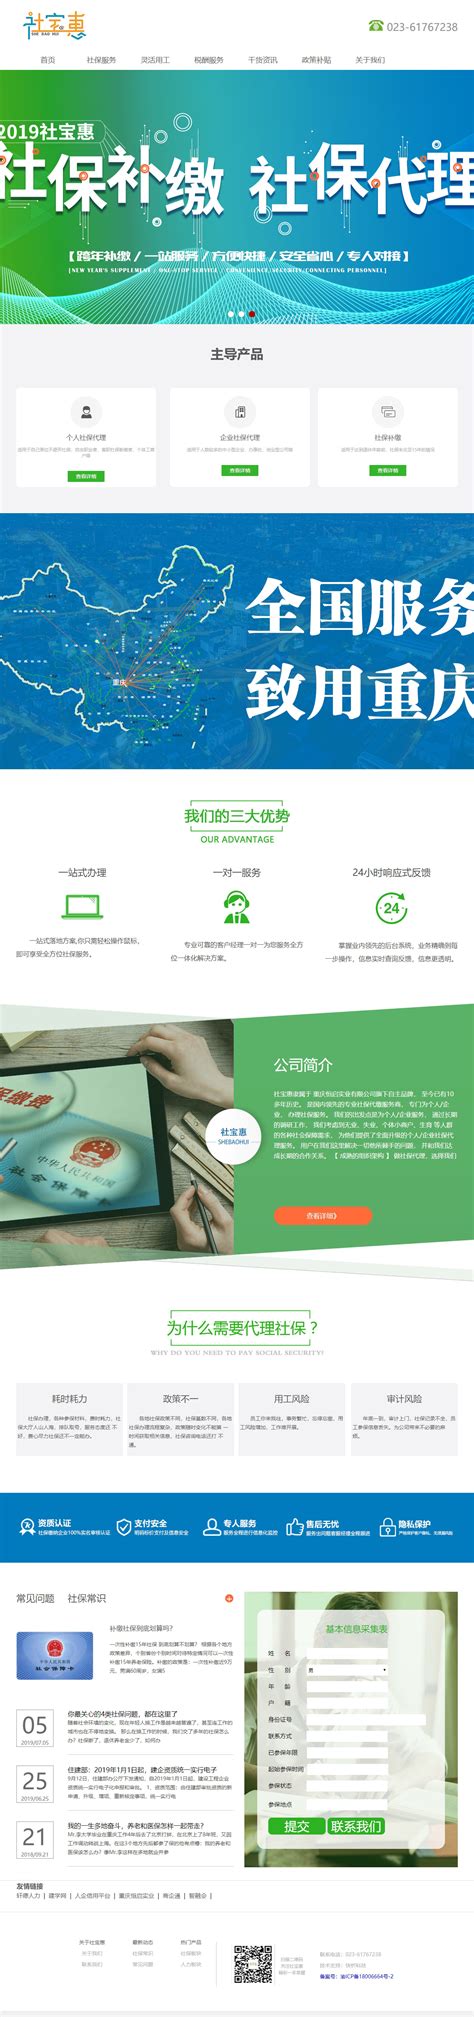 重庆网站制作方法